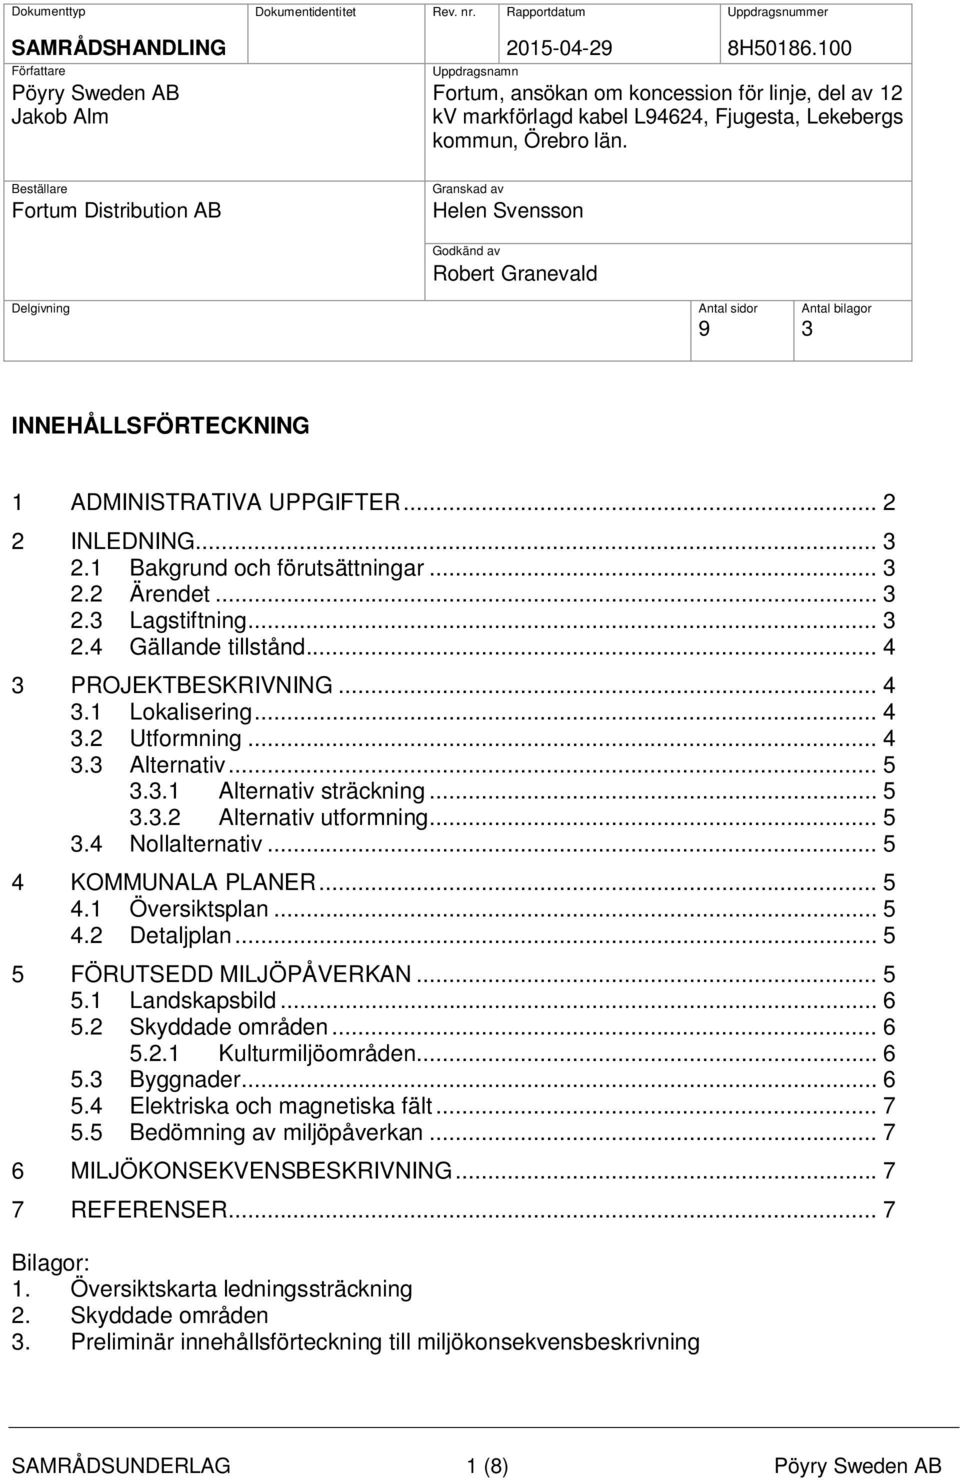 Beställare Fortum Distribution AB Granskad av Helen Svensson Godkänd av Robert Granevald Delgivning Antal sidor Antal bilagor 9 3 INNEHÅLLSFÖRTECKNING 1 ADMINISTRATIVA UPPGIFTER... 2 2 INLEDNING... 3 2.